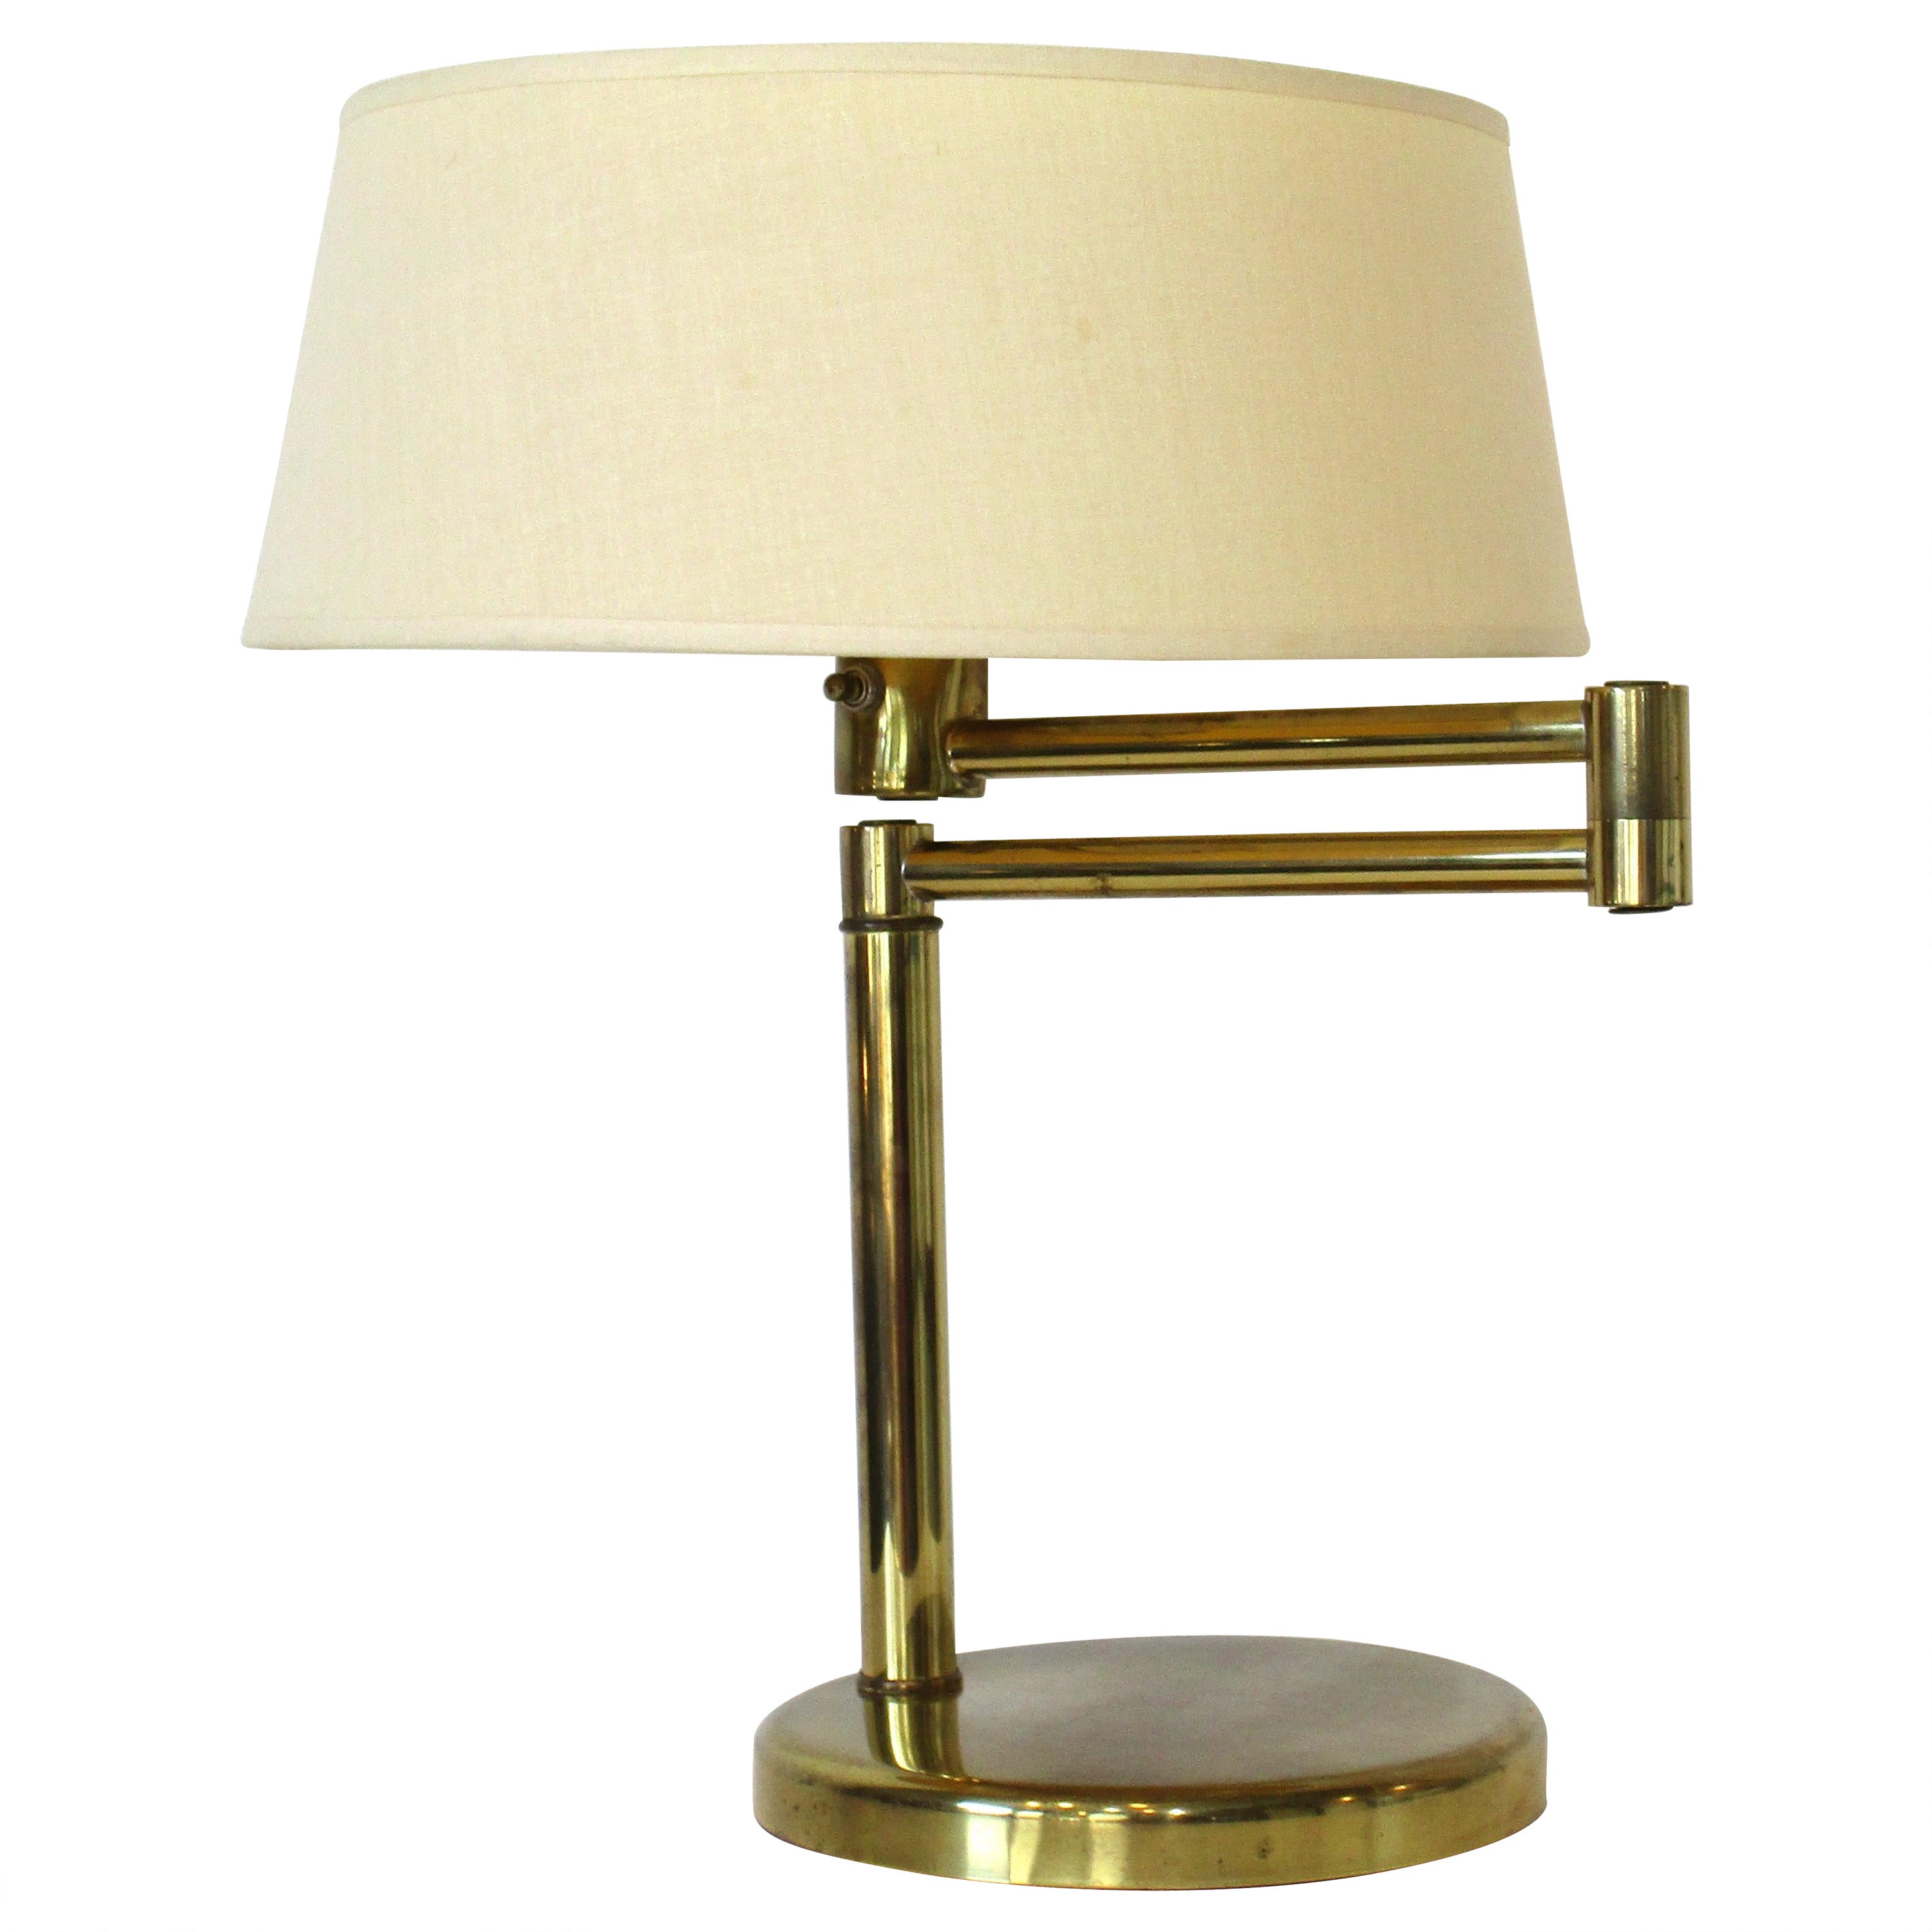 Nessen Brass Swing Arm Table Lamp by Walter Von Nessen